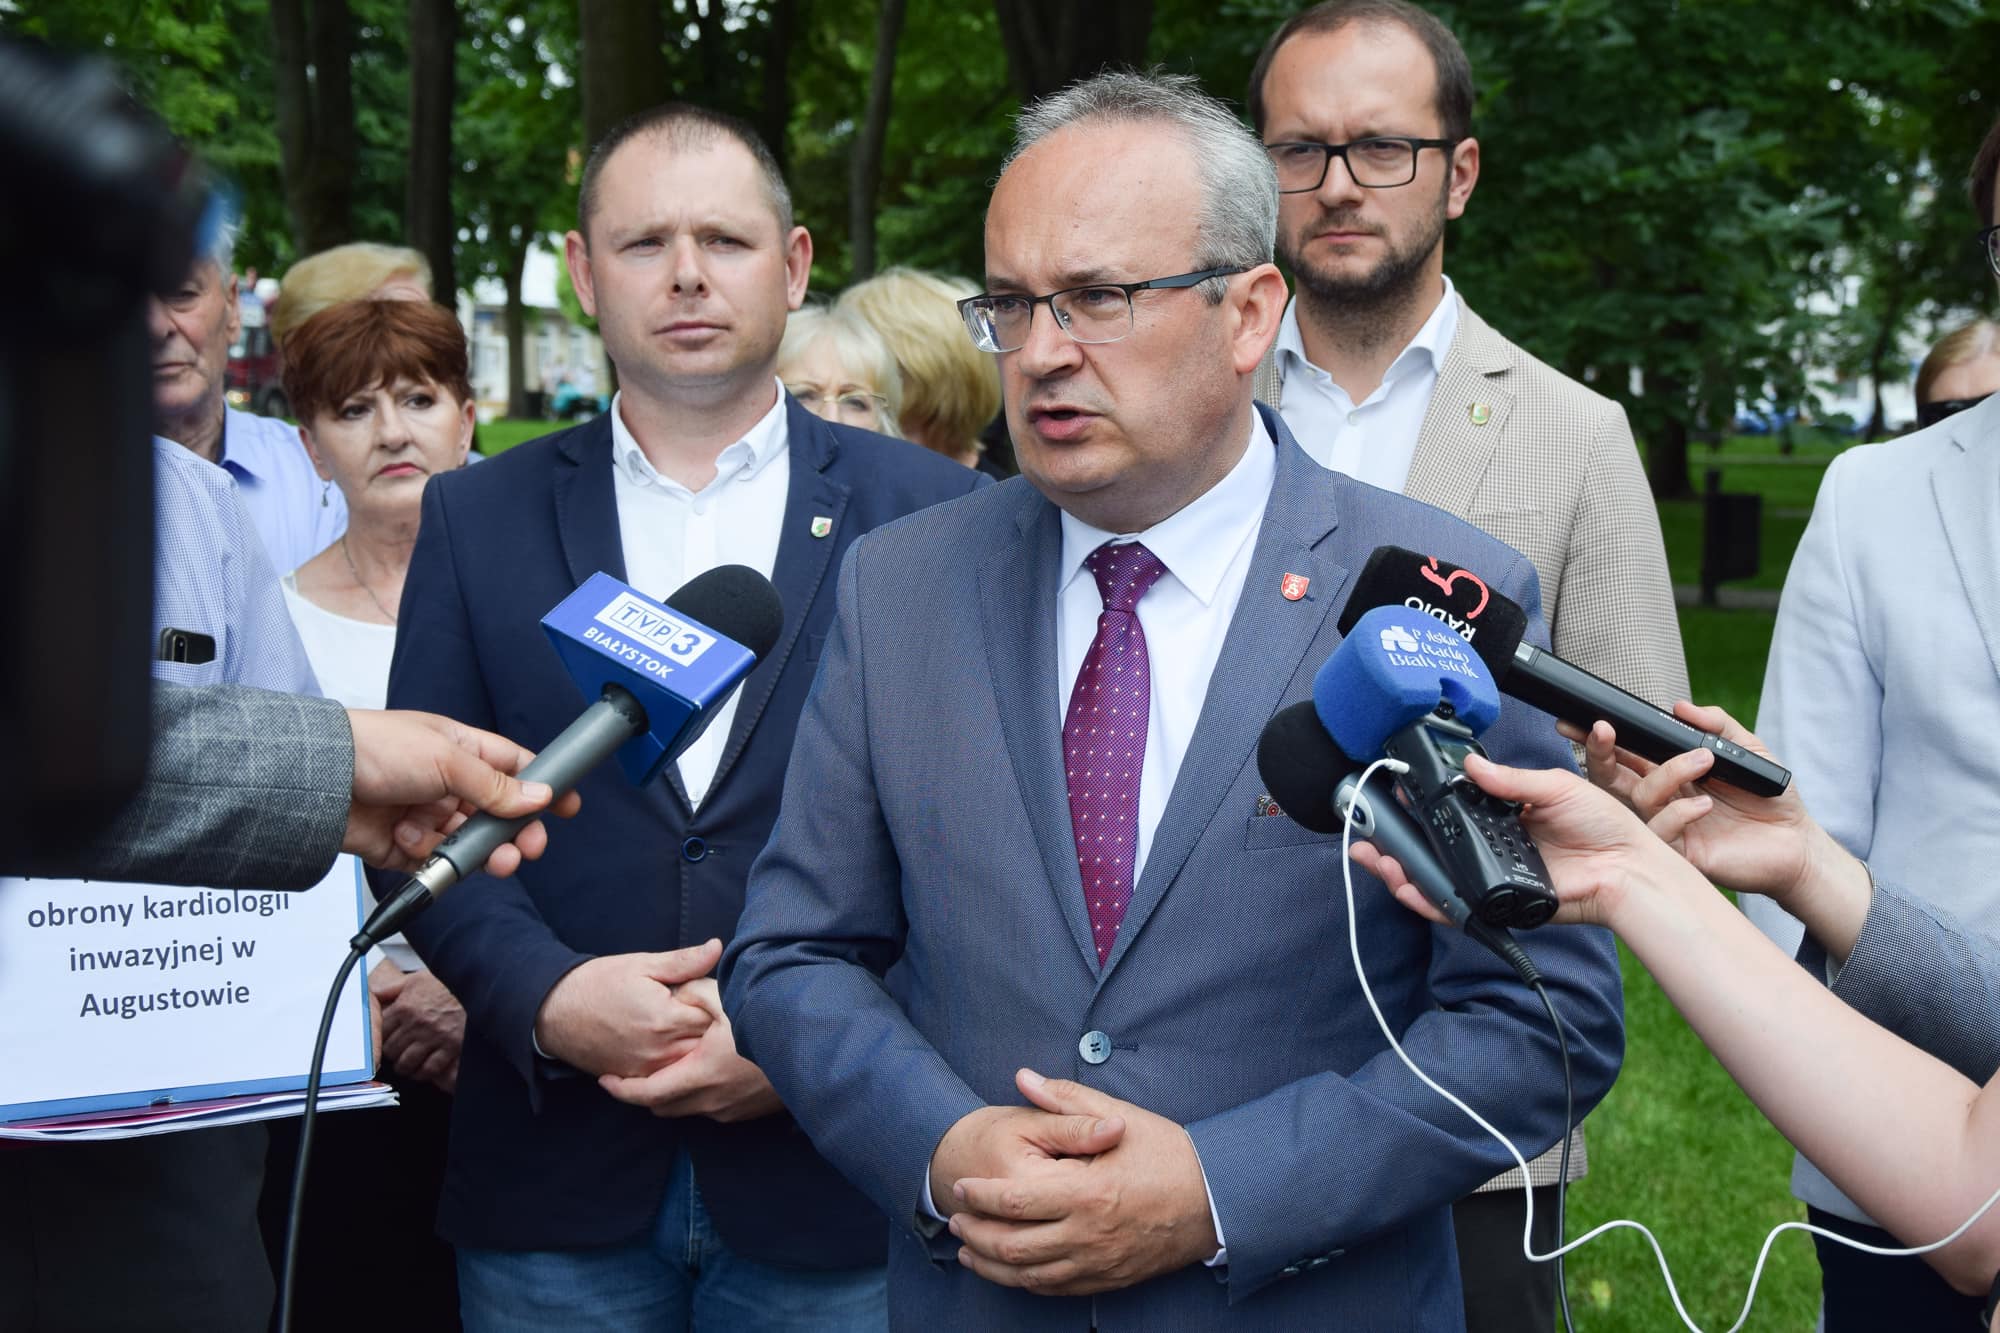 burmistrz augustowa udziela wywiadu z tyłu stoi burmistrz dąbrowy i przewodniczący rady